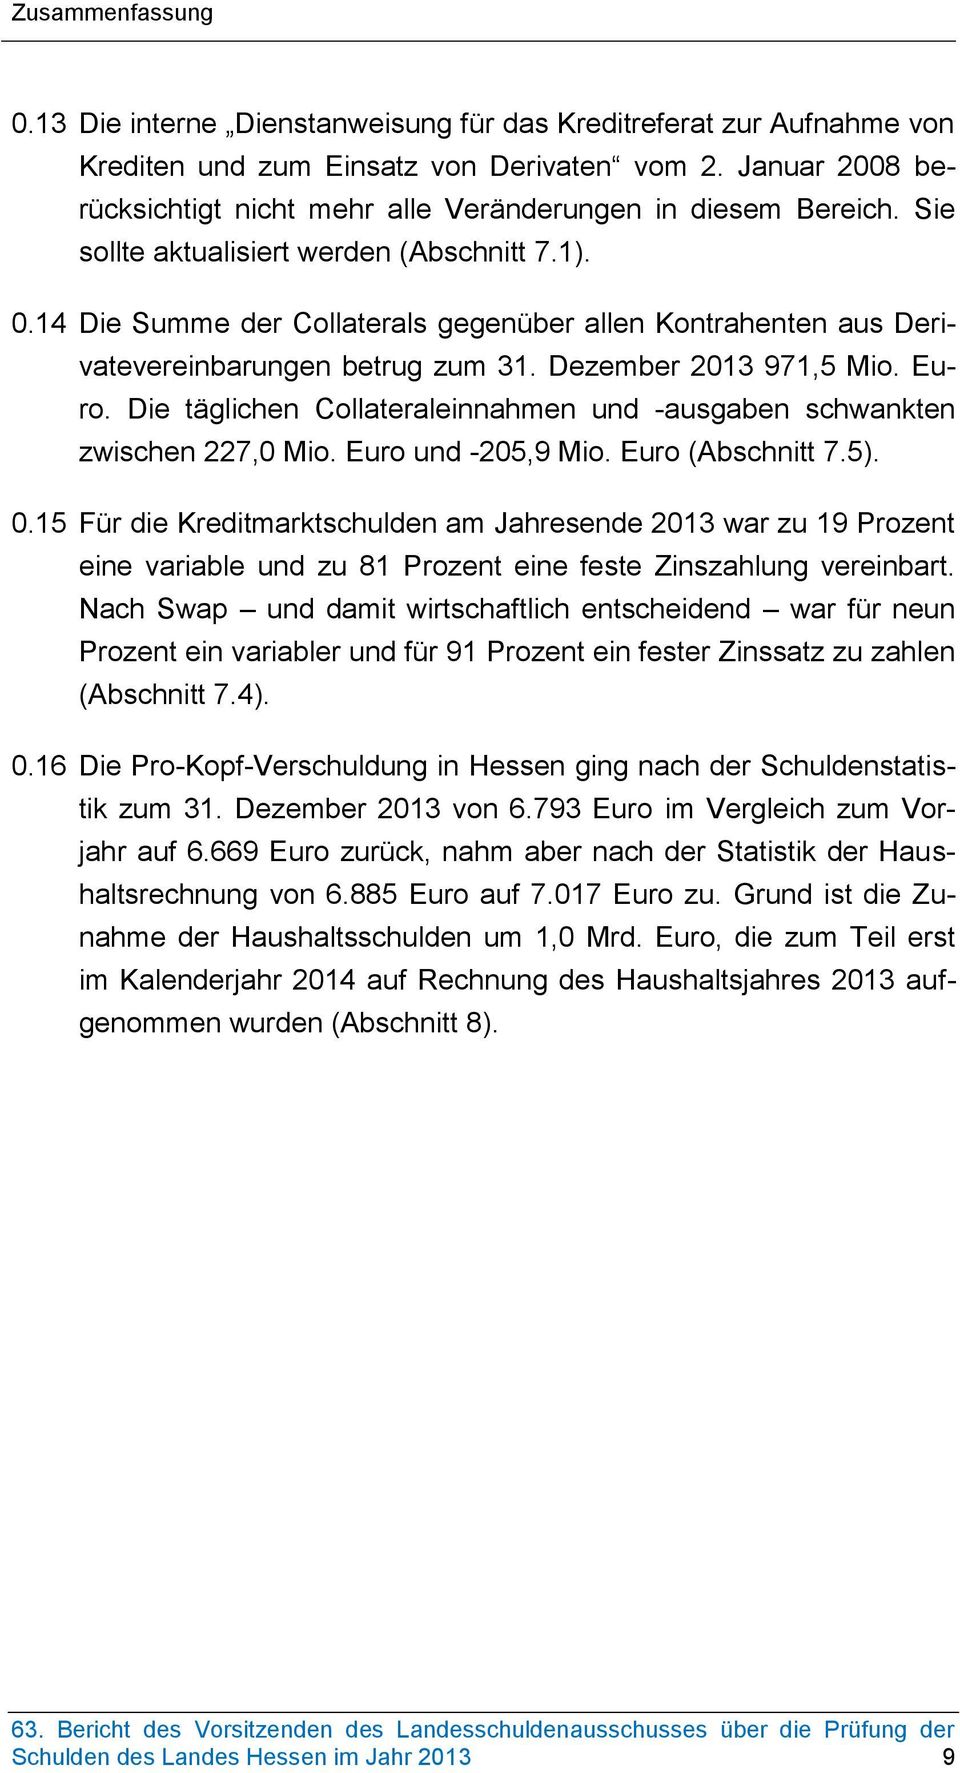 14 Die Summe der Collaterals gegenüber allen Kontrahenten aus Derivatevereinbarungen betrug zum 31. Dezember 2013 971,5 Mio. Euro.